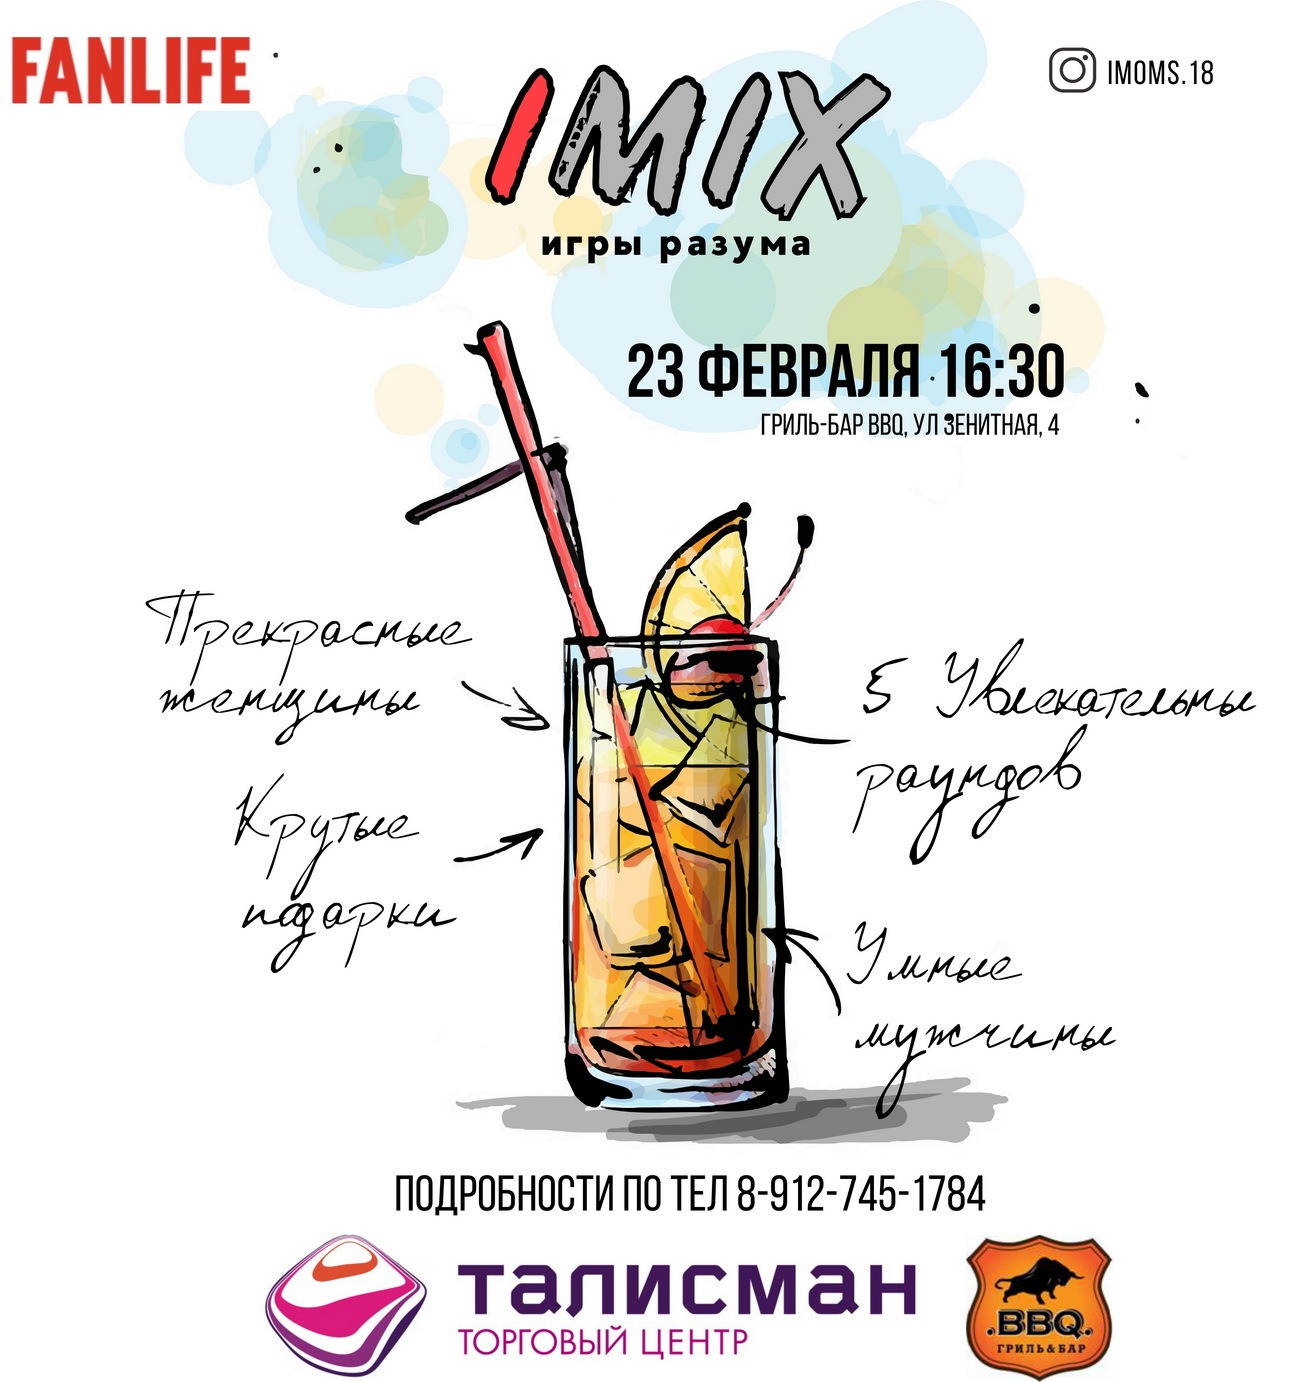 Афиша Ижевска — Игра iMix в честь 23 февраля